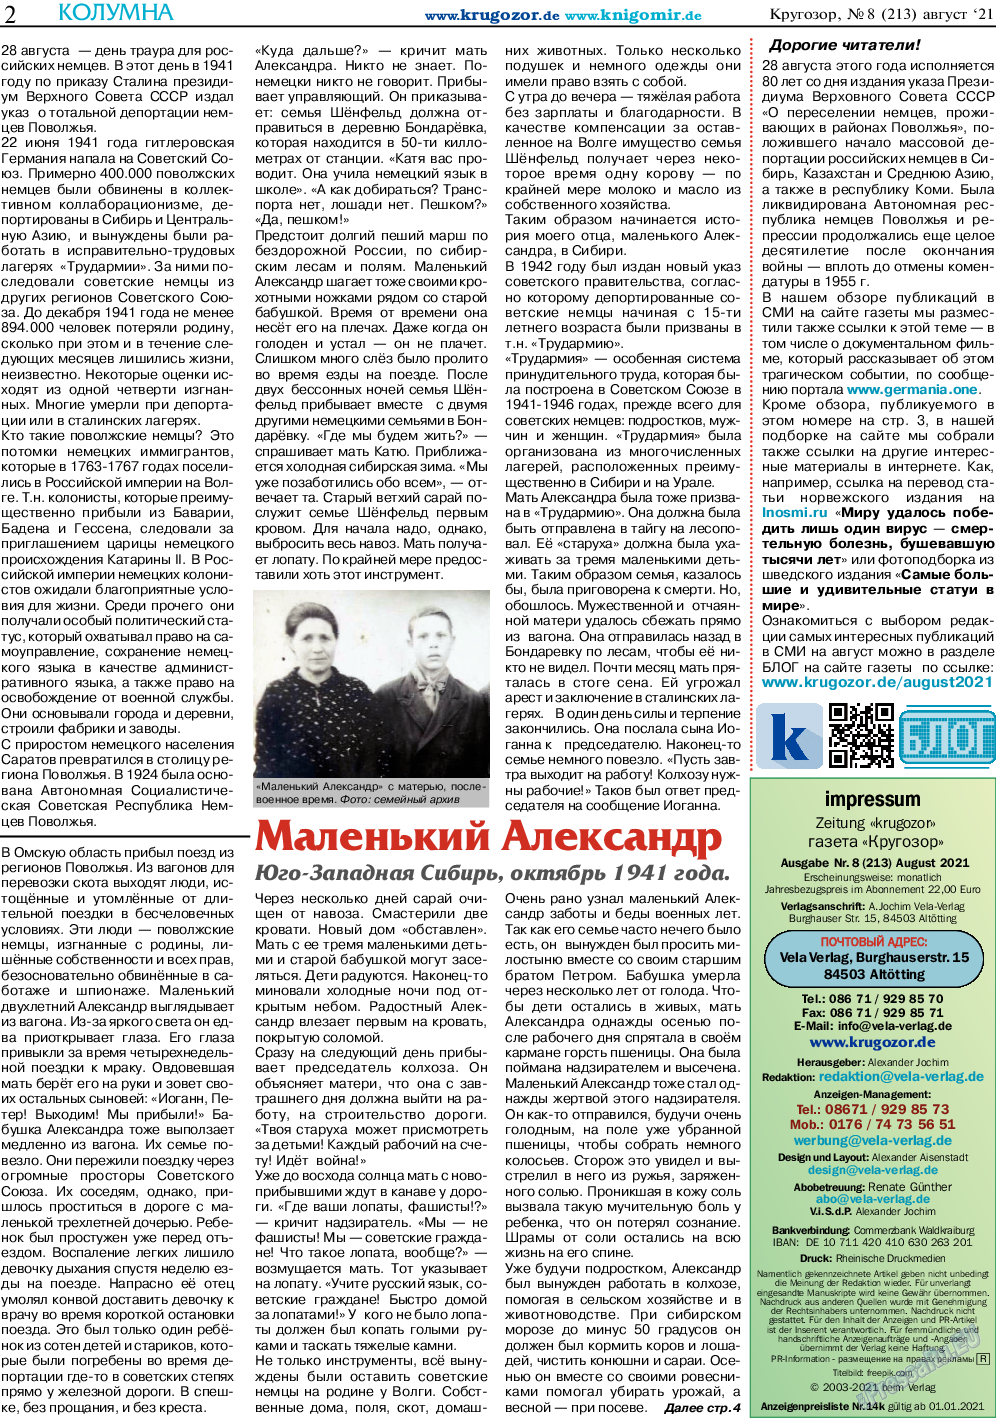 Кругозор, газета. 2021 №8 стр.2